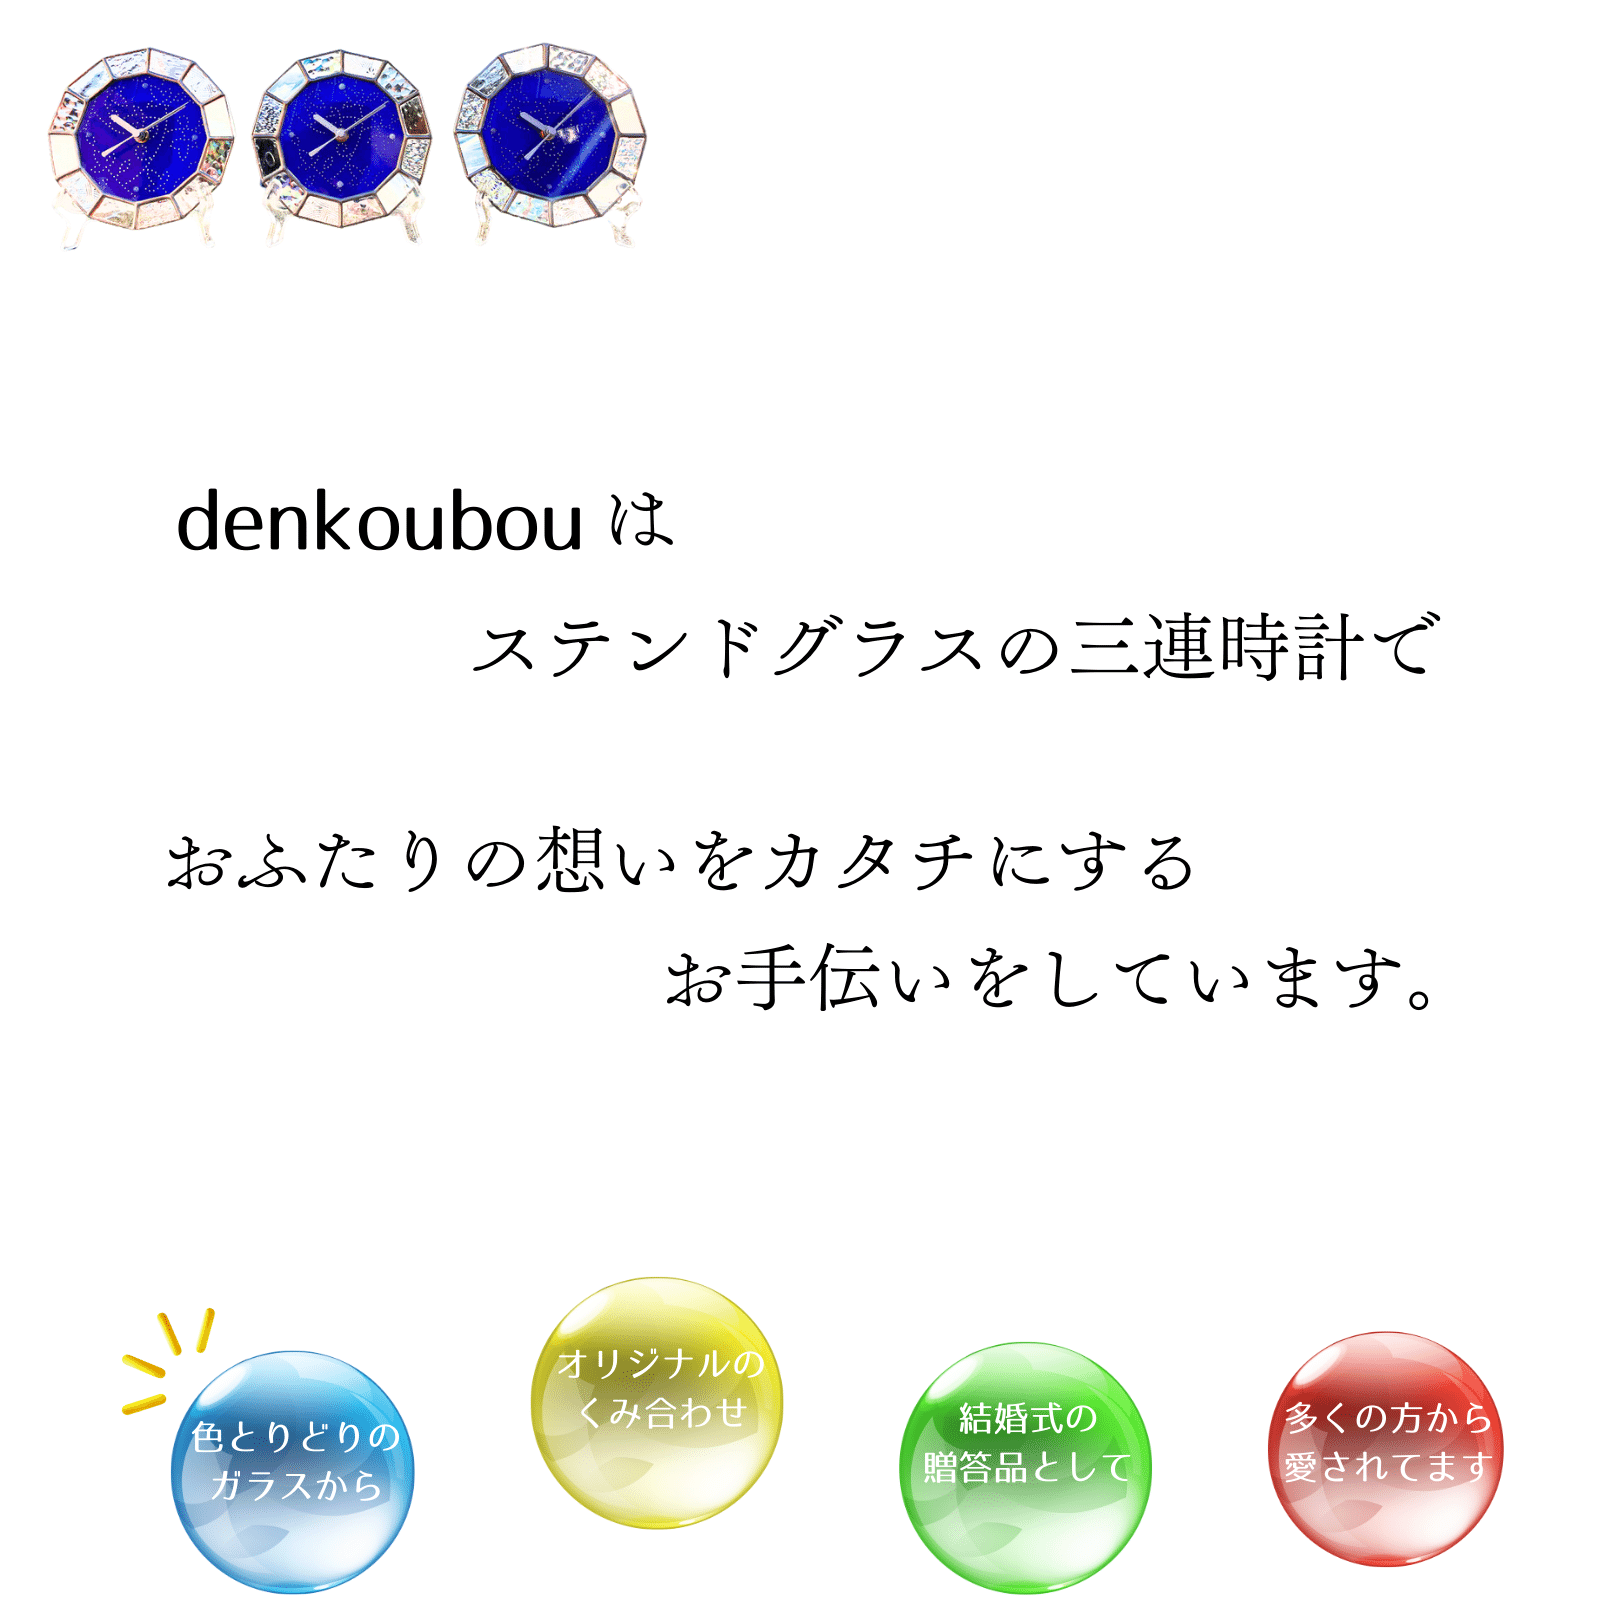 denkoubouはステンドグラスの三連時計で、おふたりの想いをカタチにするお手伝いをしています。